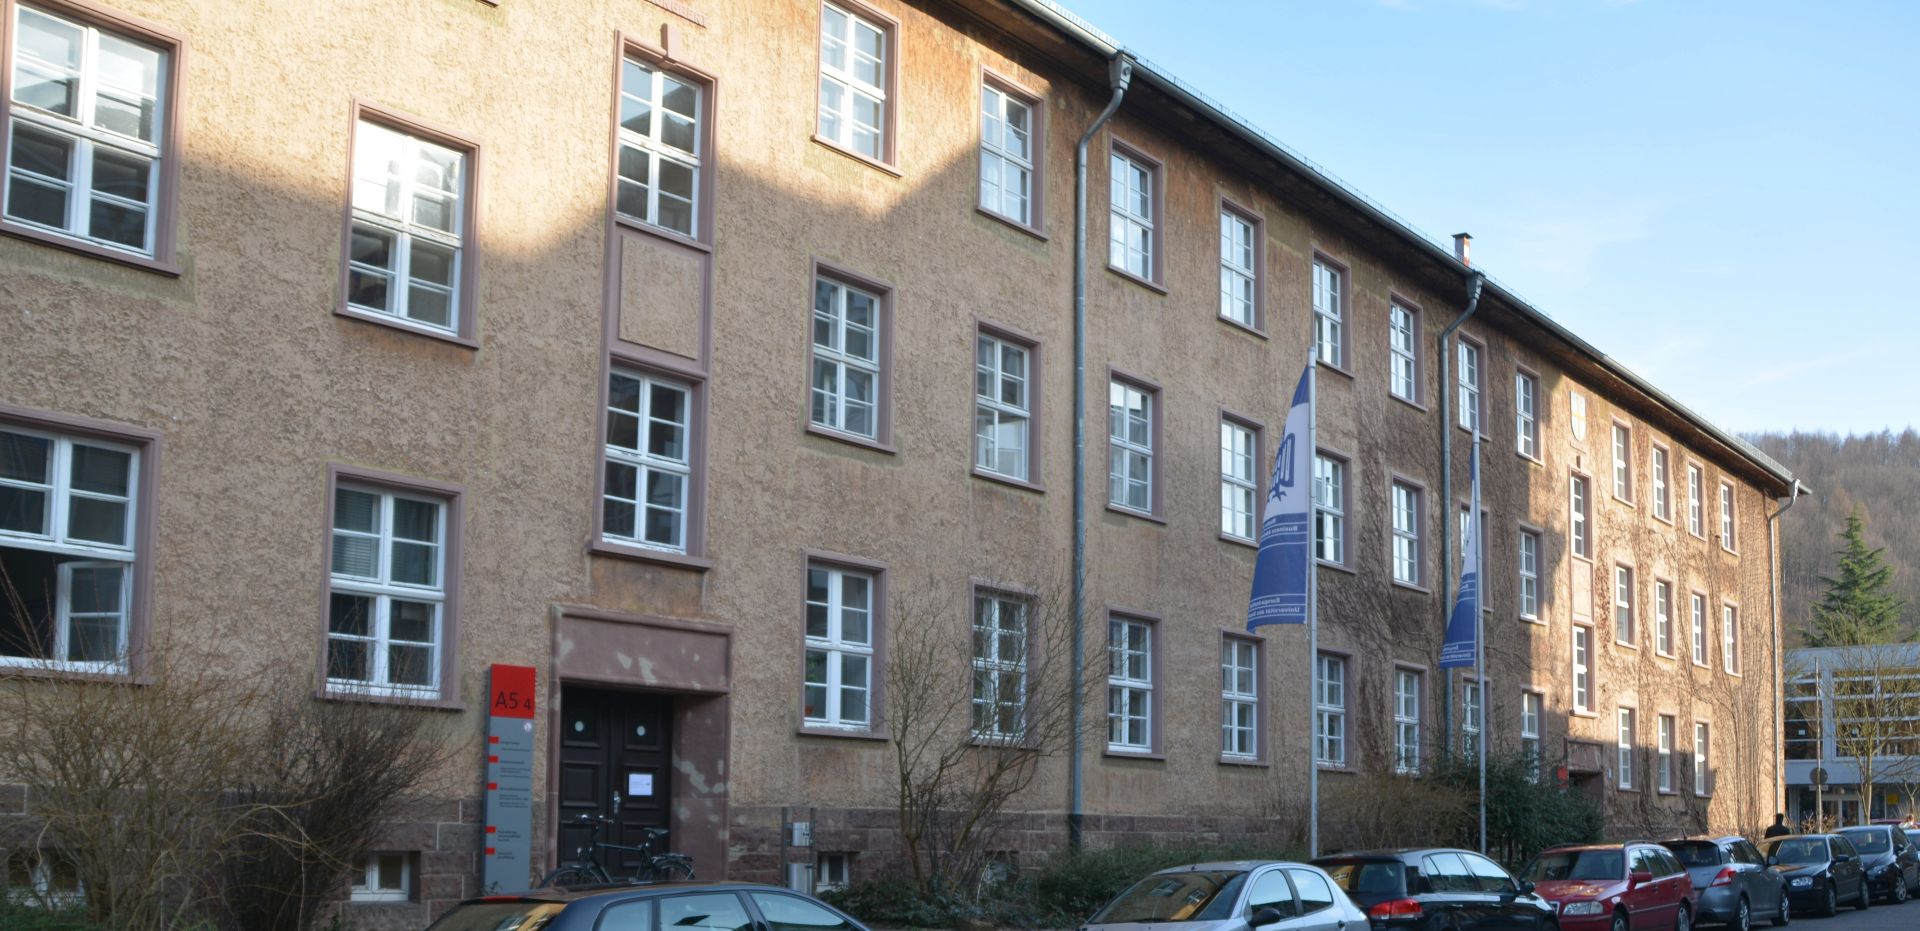 Ansicht des Gebäudes A5 4 auf dem Campus der Universität des Saarlandes